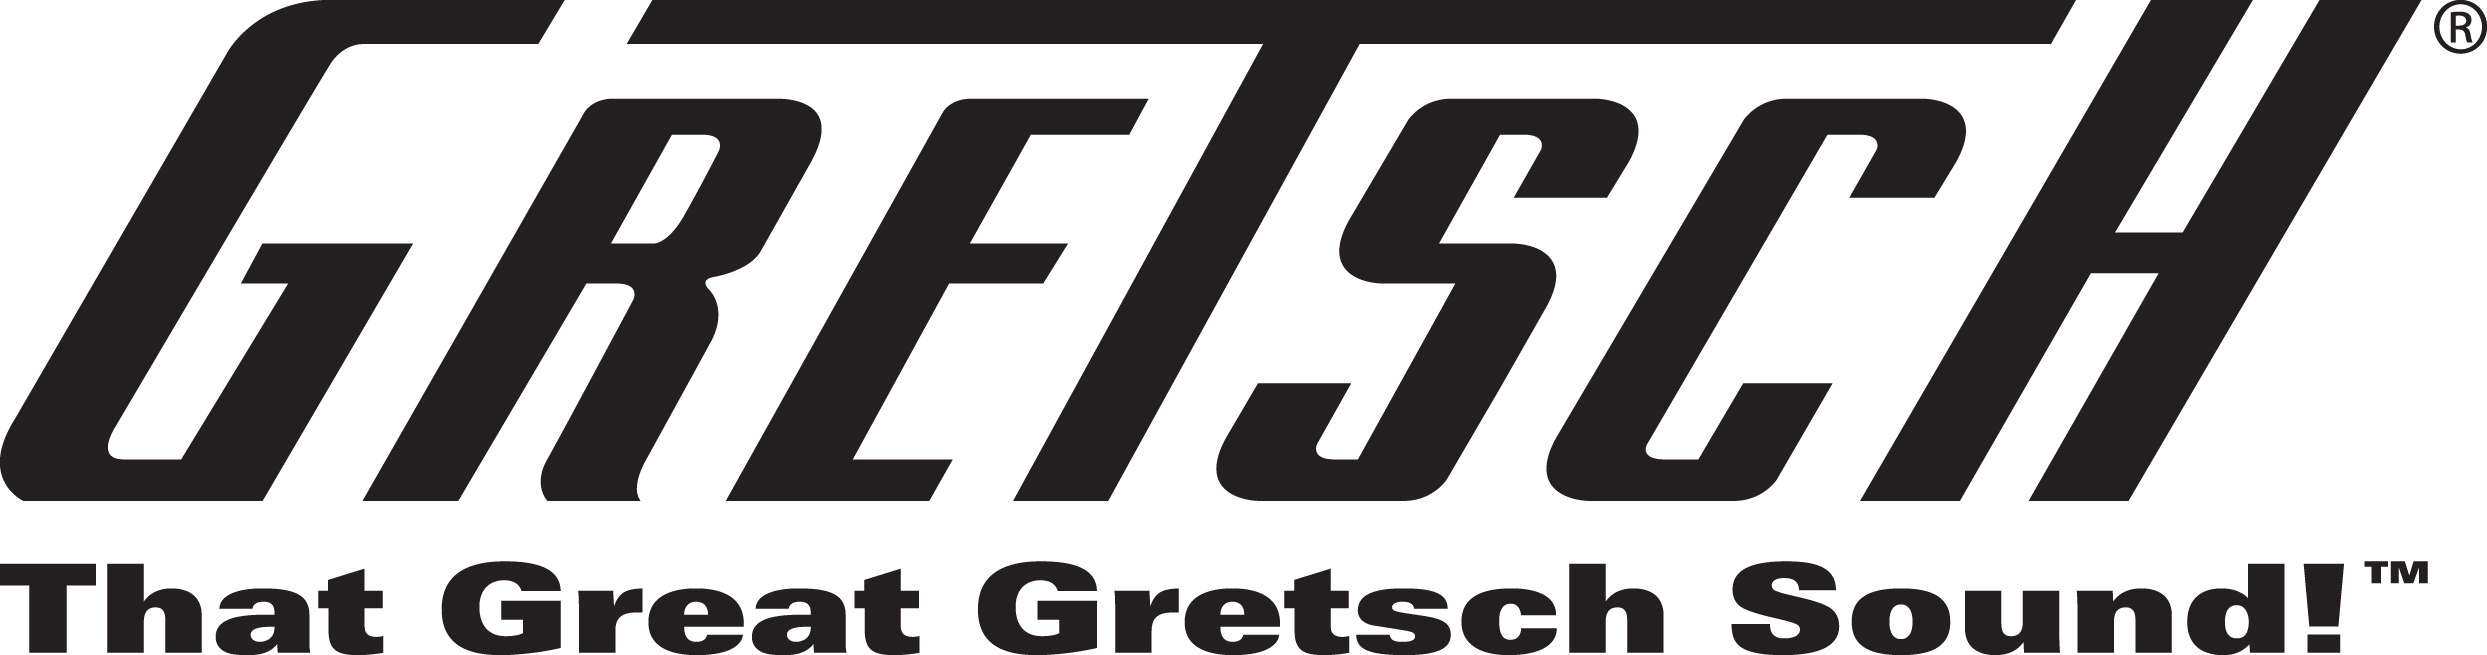 Gretsch guitar distribution